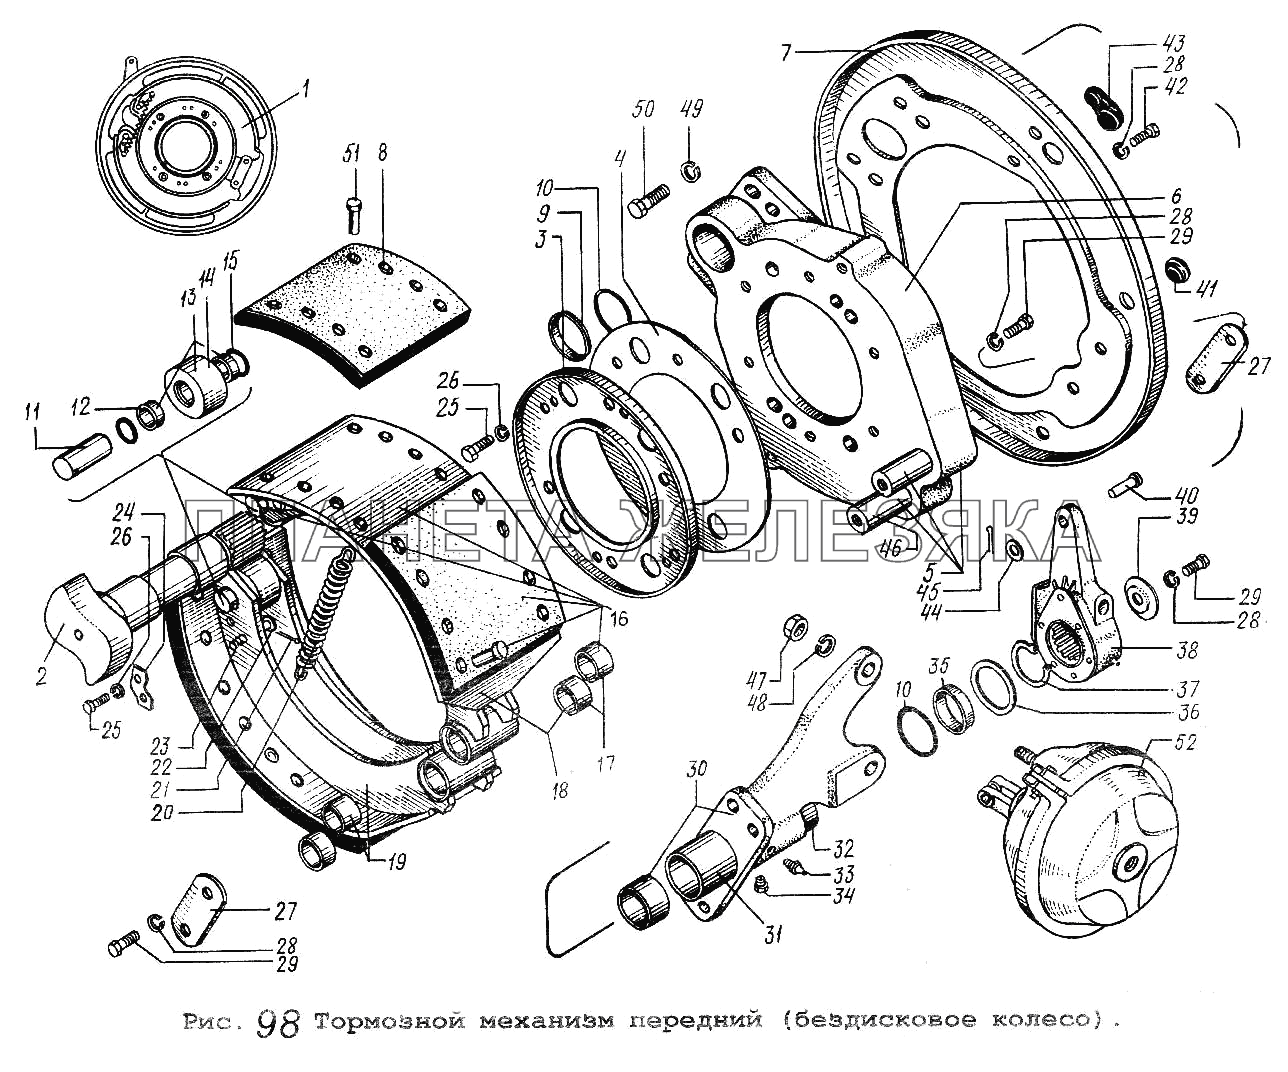 Тормозной механизм передний (бездисковое колесо) МАЗ-54323